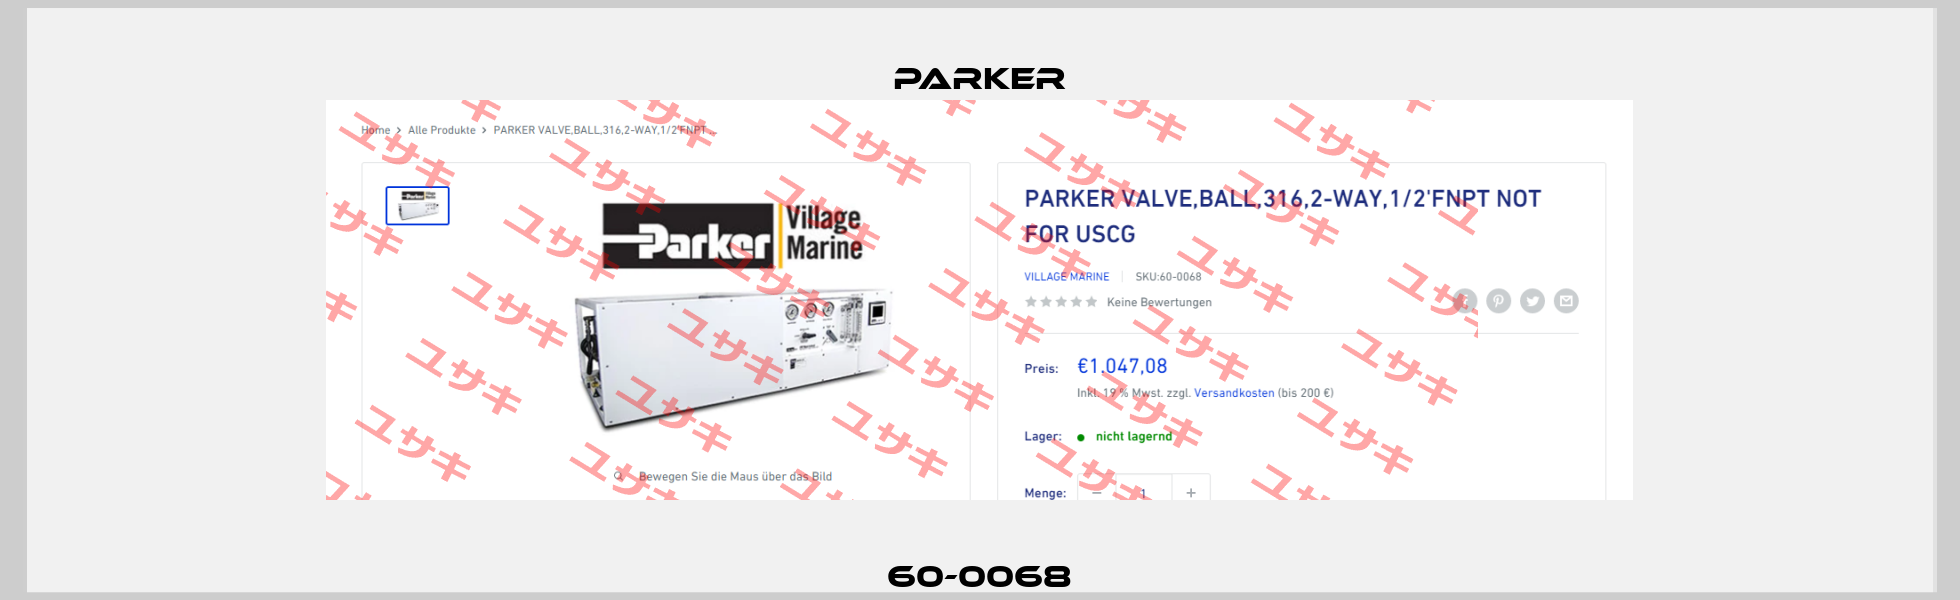 60-0068 Parker